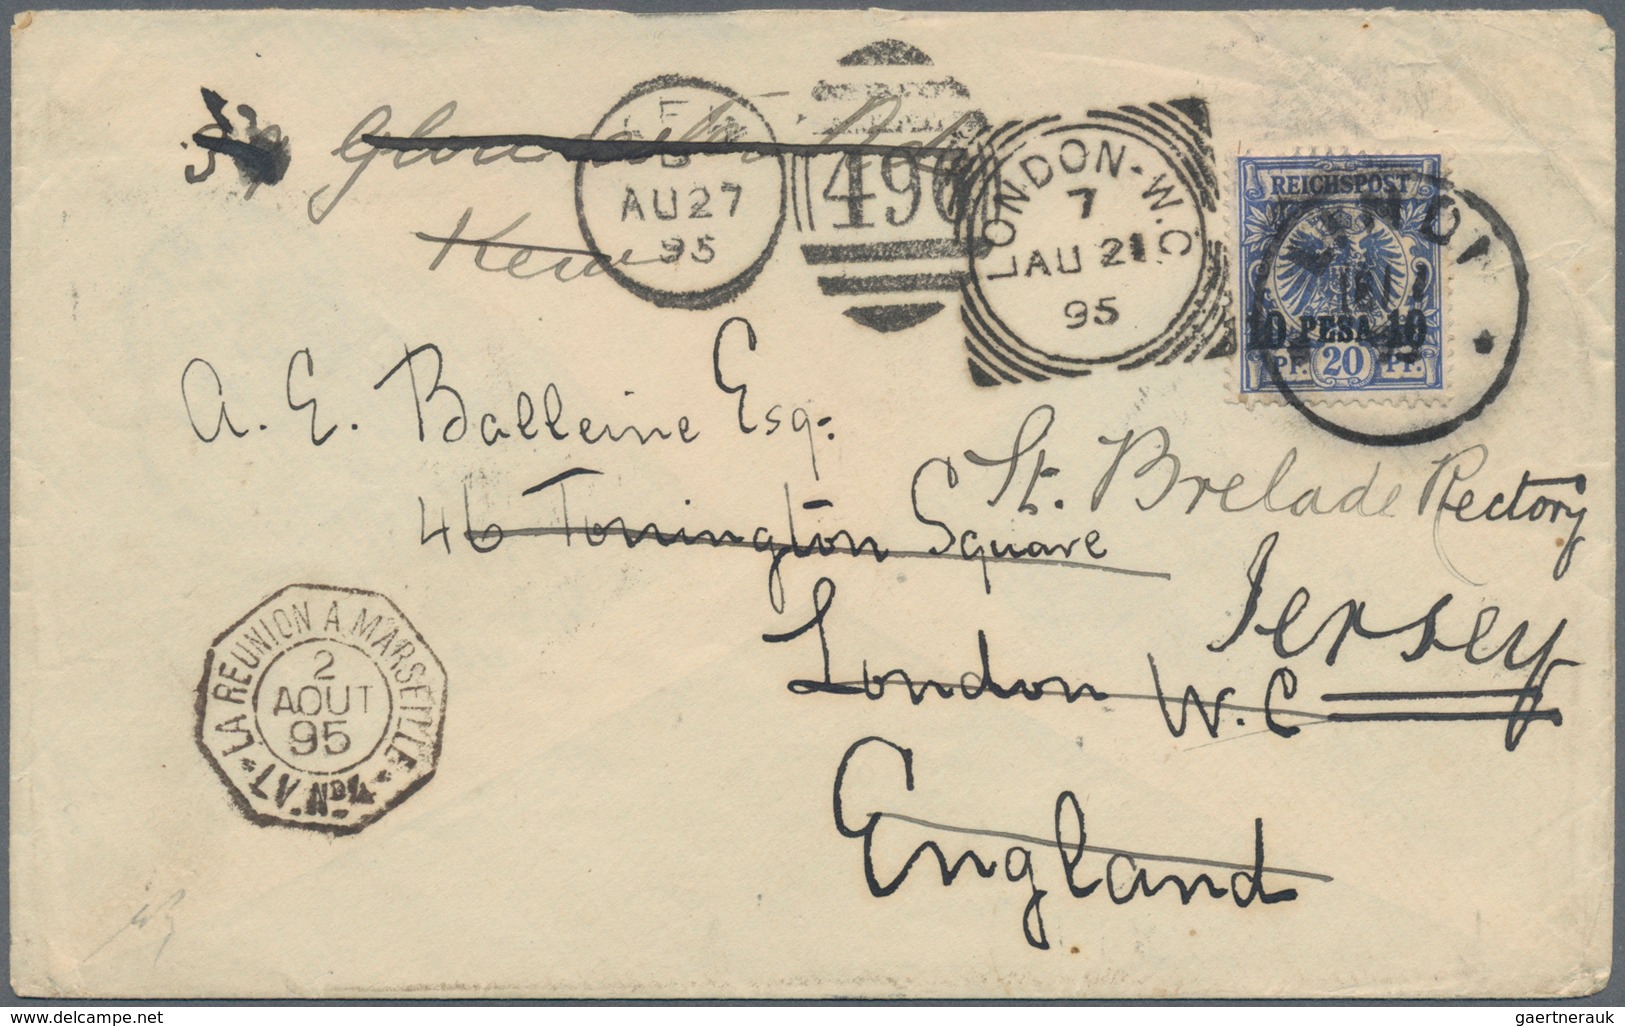 Deutsch-Ostafrika: 1892/1916, interessanter Posten mit fast 60 Briefen und Karten, dabei u.a. besser